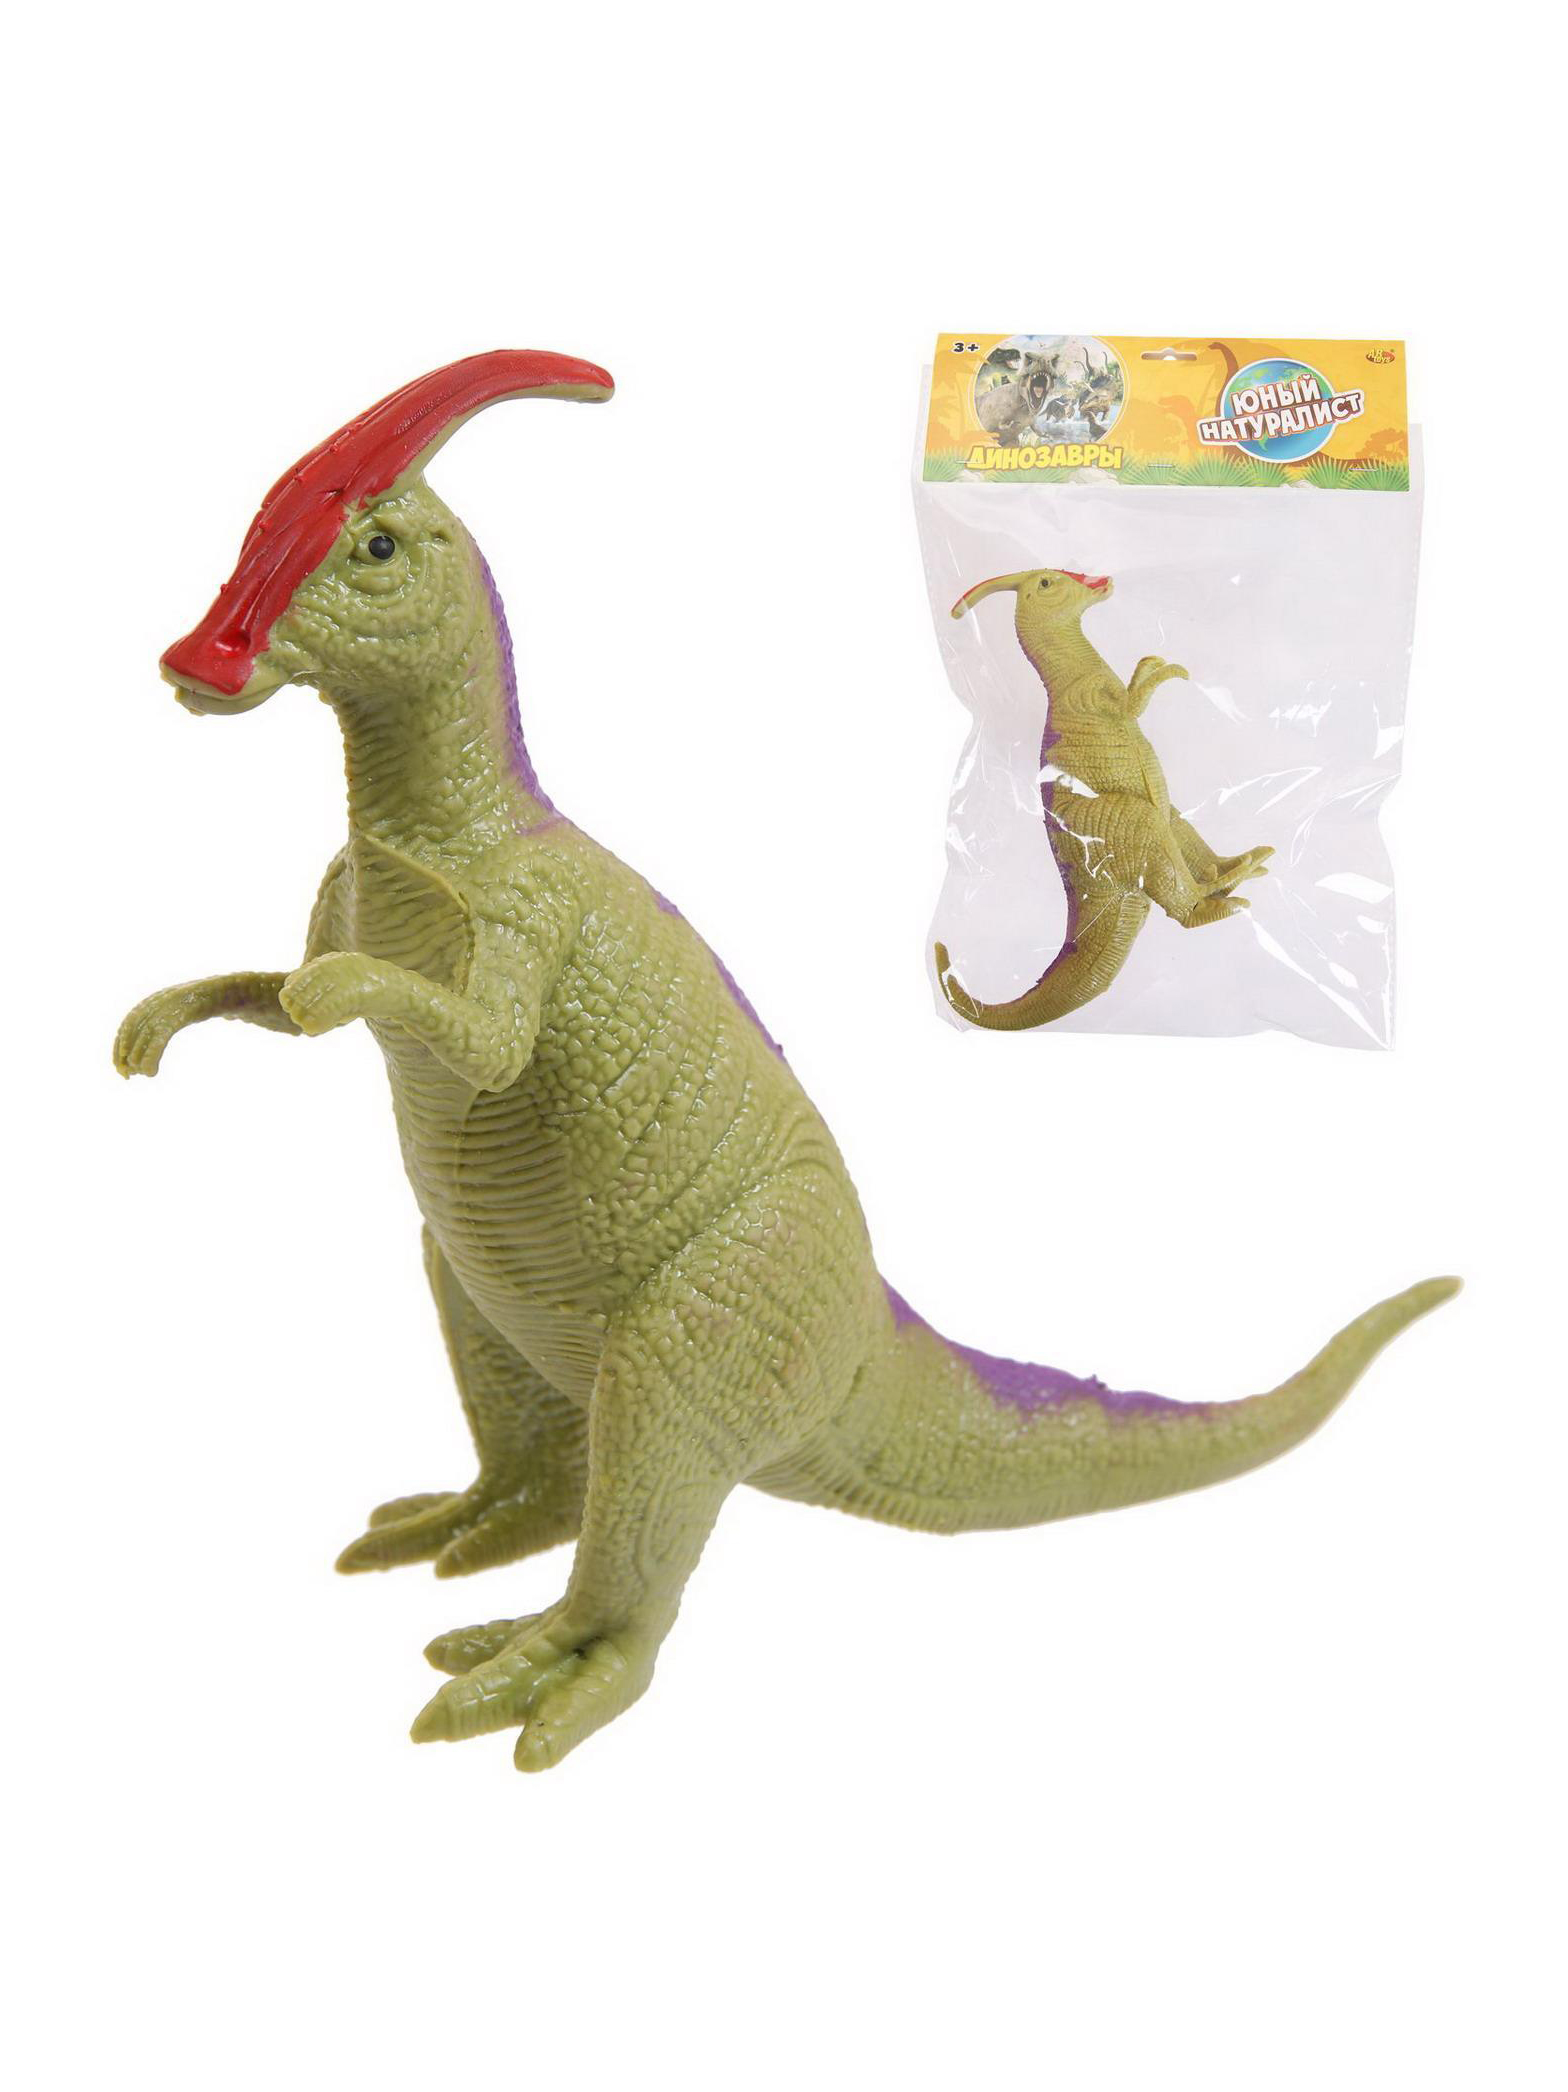 Фигурка Abtoys Юный натуралист: Динозавры Паразауролоф резиновая в пакете PT-01692